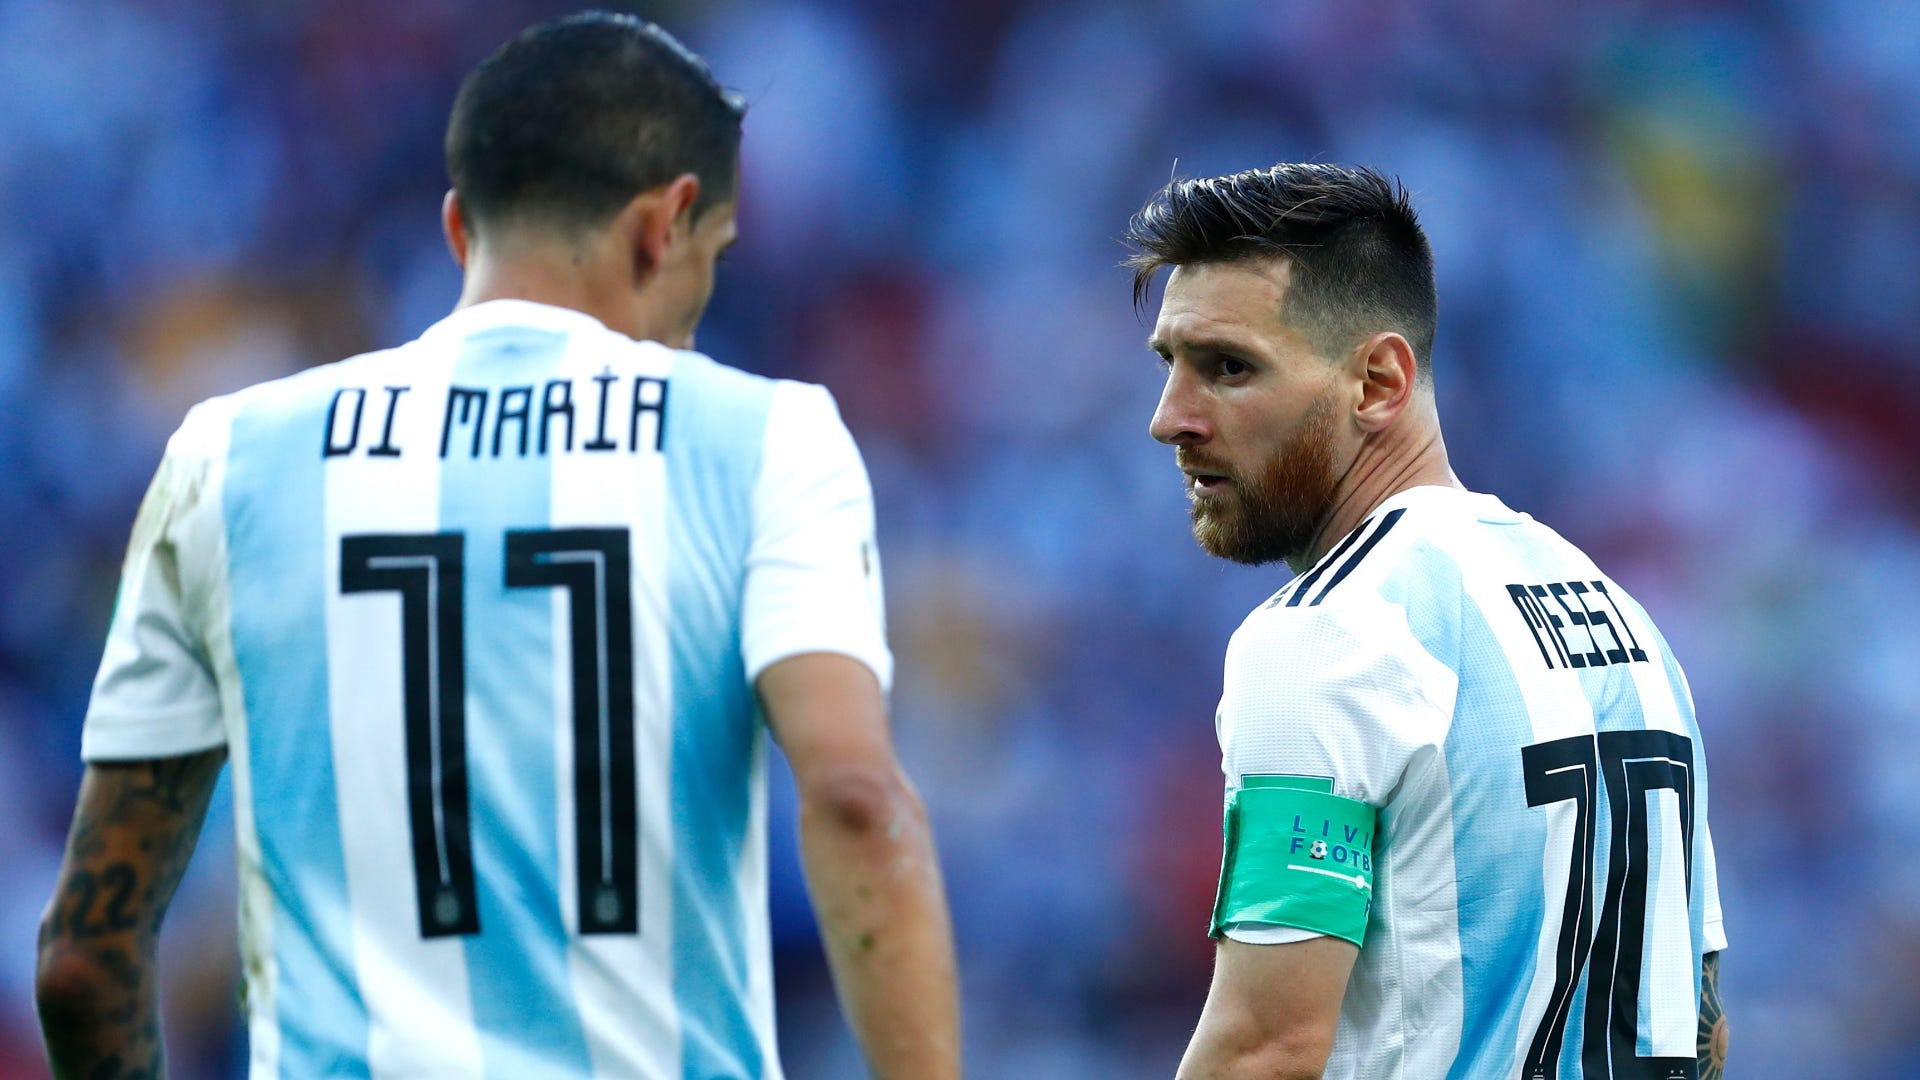 Xem ảnh của Messi trên đội tuyển Argentina sẽ khiến bạn dễ chịu hơn trong ngày hôm nay. Với tài năng siêu phàm và đầy cảm xúc của Messi, đội tuyển Argentina luôn là một trong những đội bóng được yêu thích nhất trong làng bóng đá quốc tế. Hãy cùng khám phá những khoảnh khắc đẹp nhất của Messi và đội tuyển Argentina trong bức ảnh này.